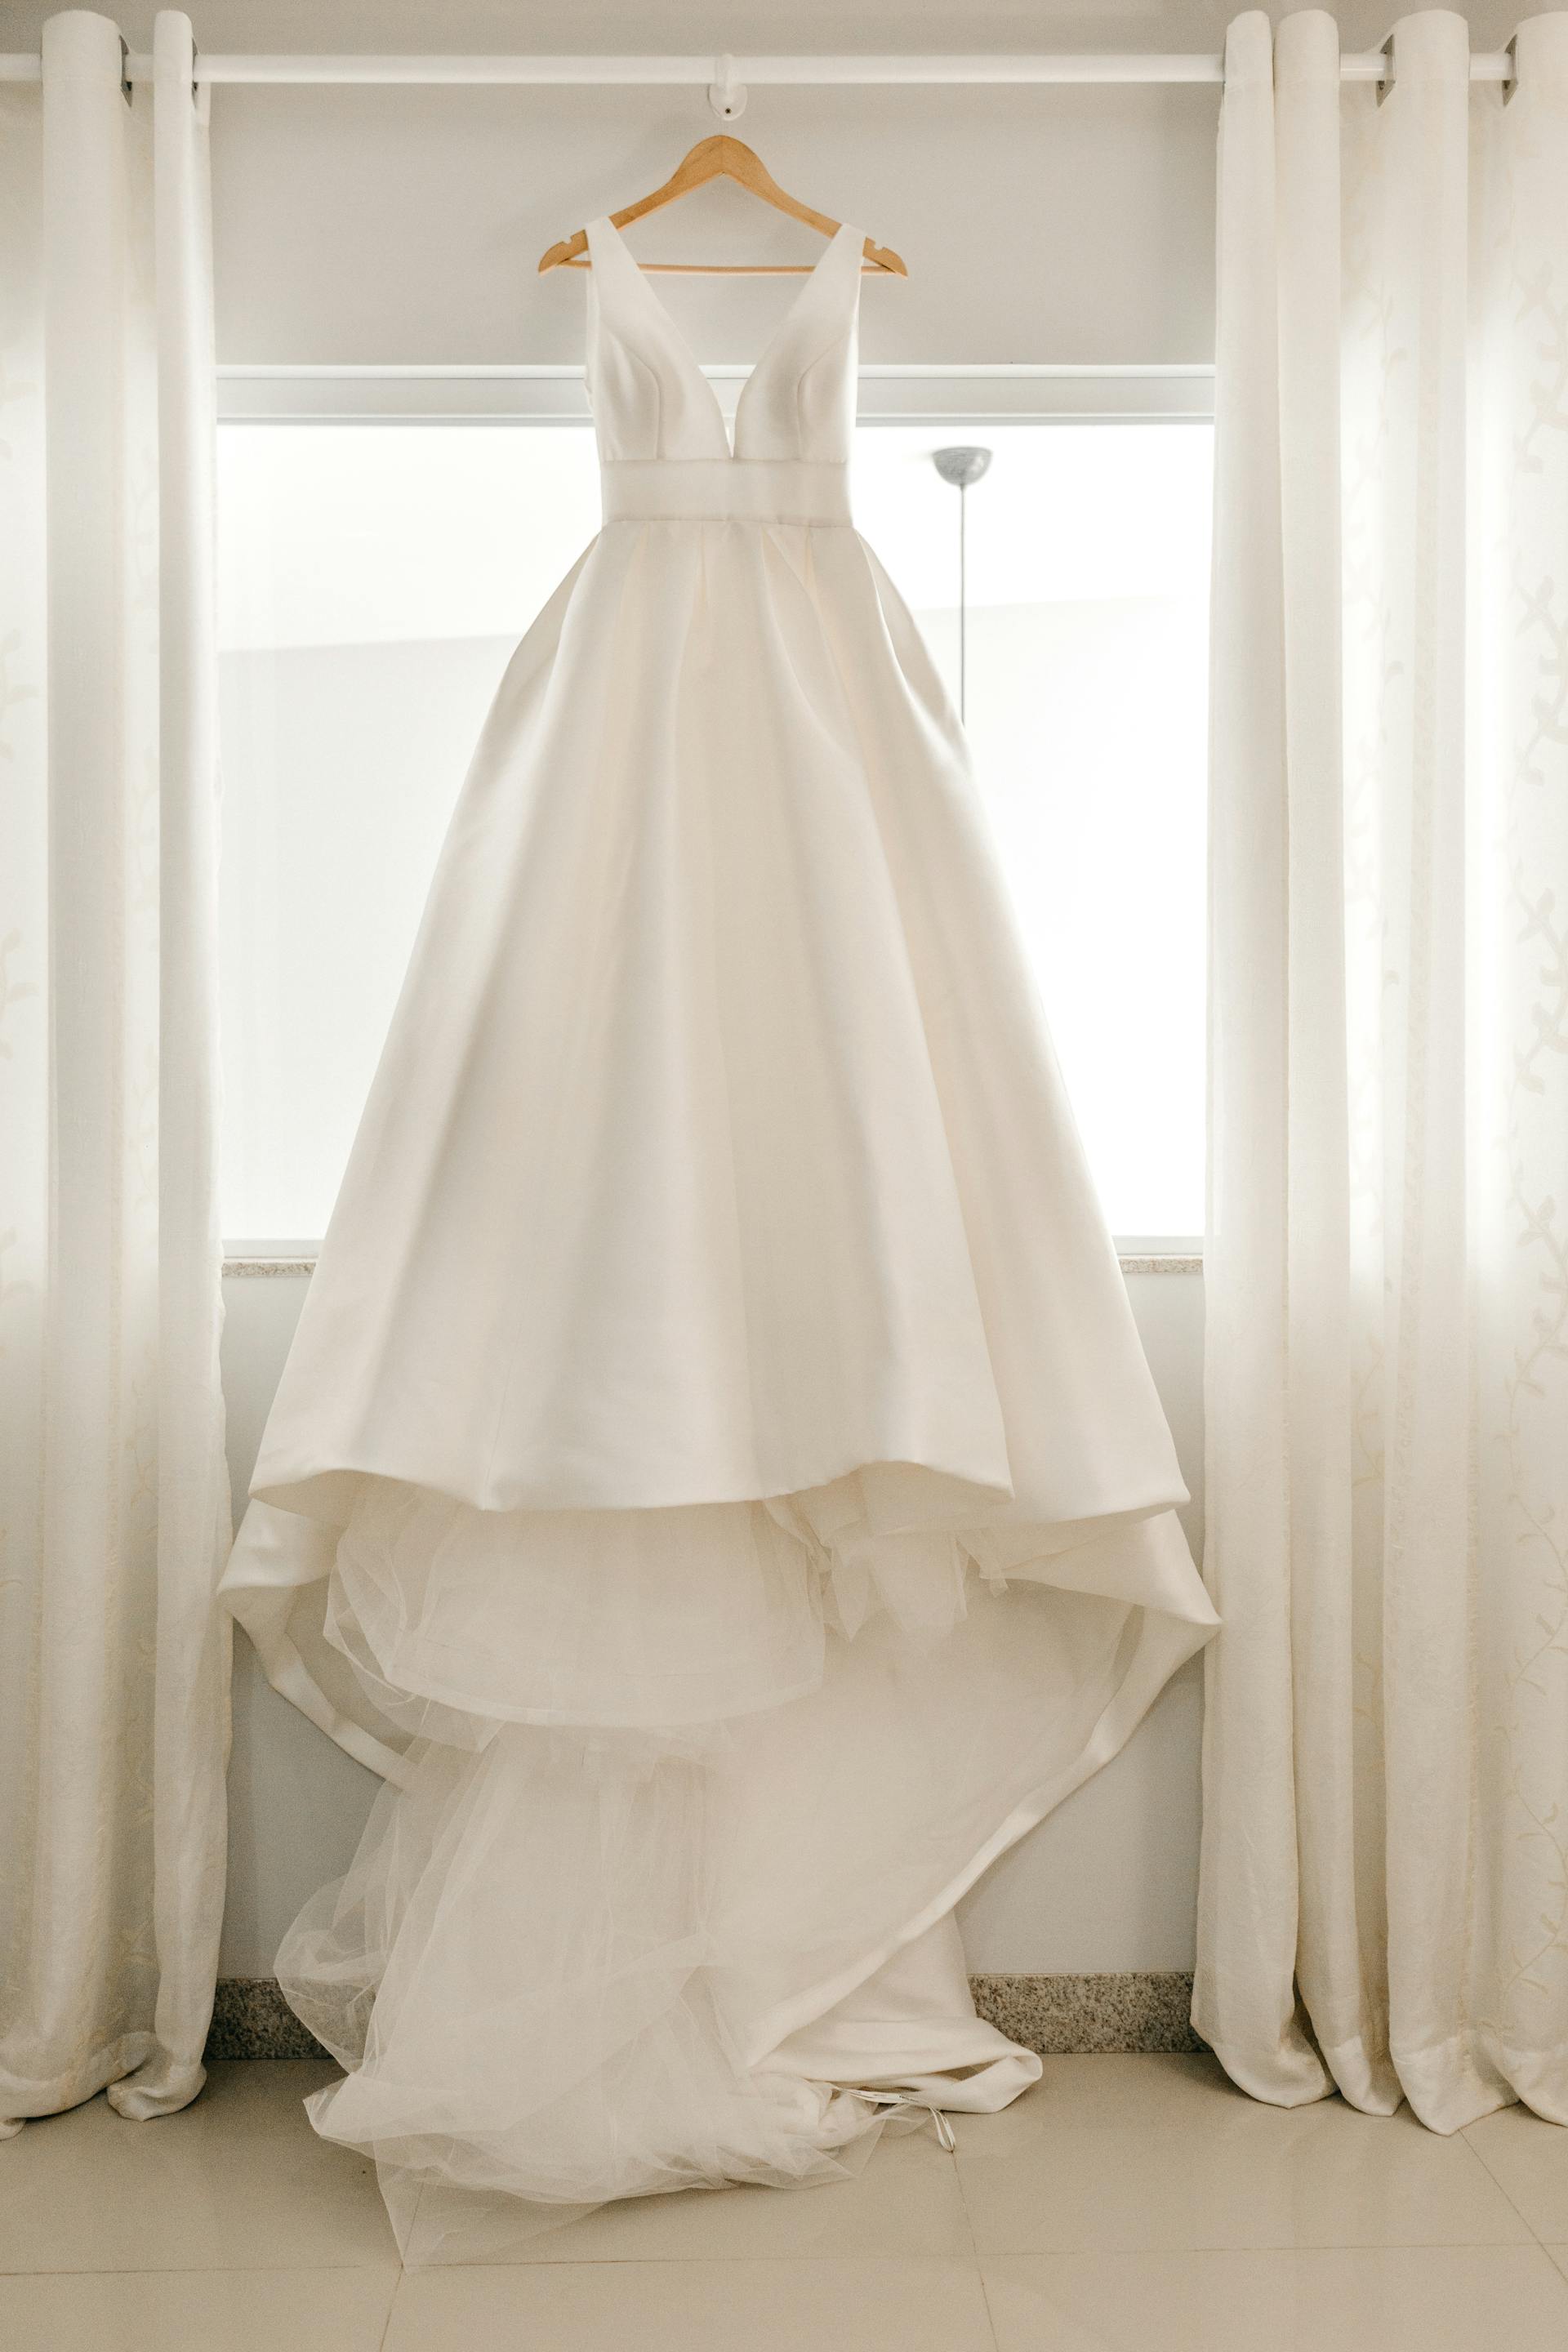 Une robe de mariée blanche sur un cintre | Source : Pexels